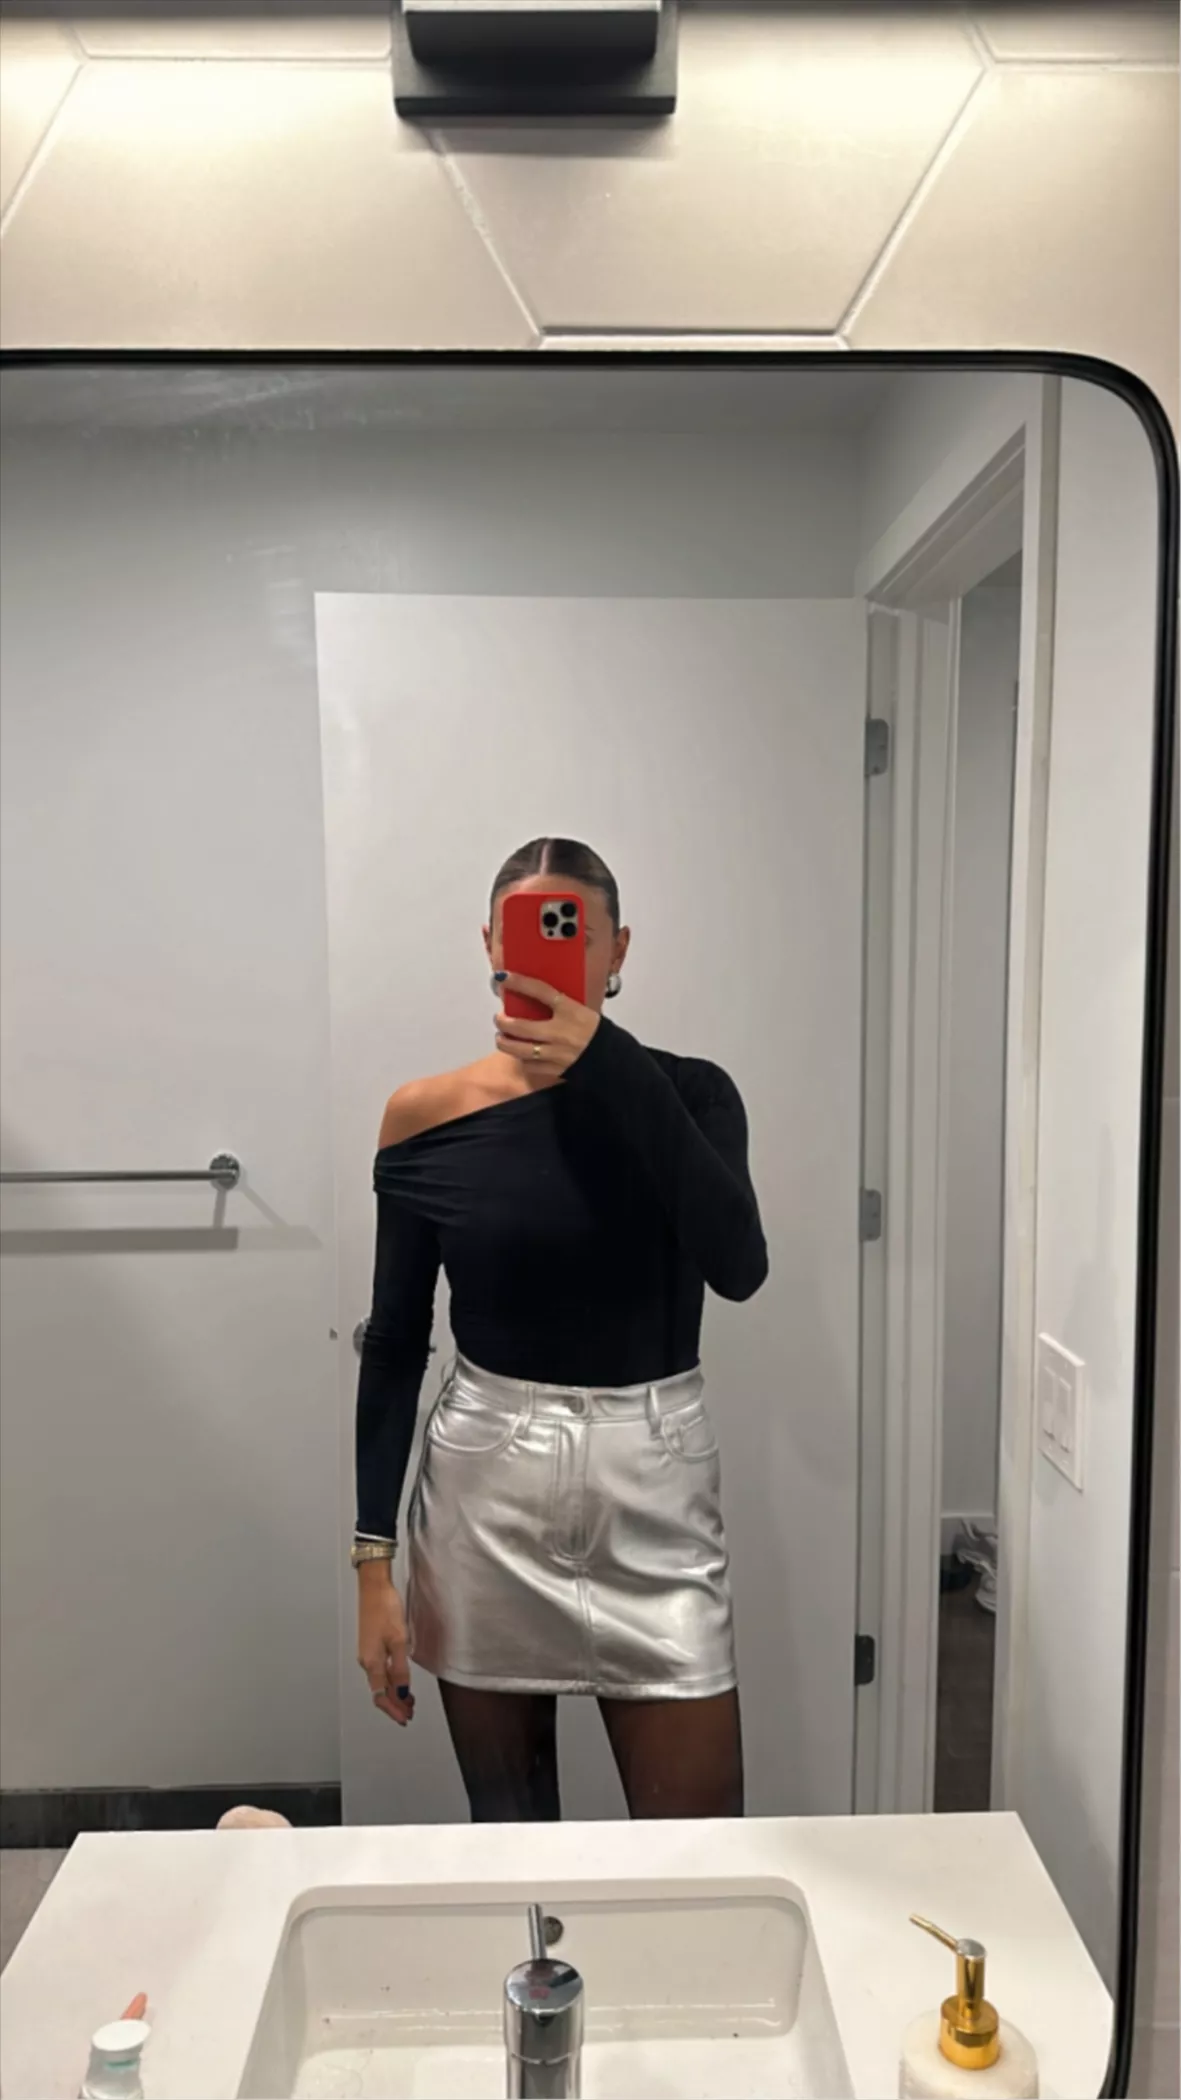 Women's Vegan Leather 5-Pocket Mini Skirt